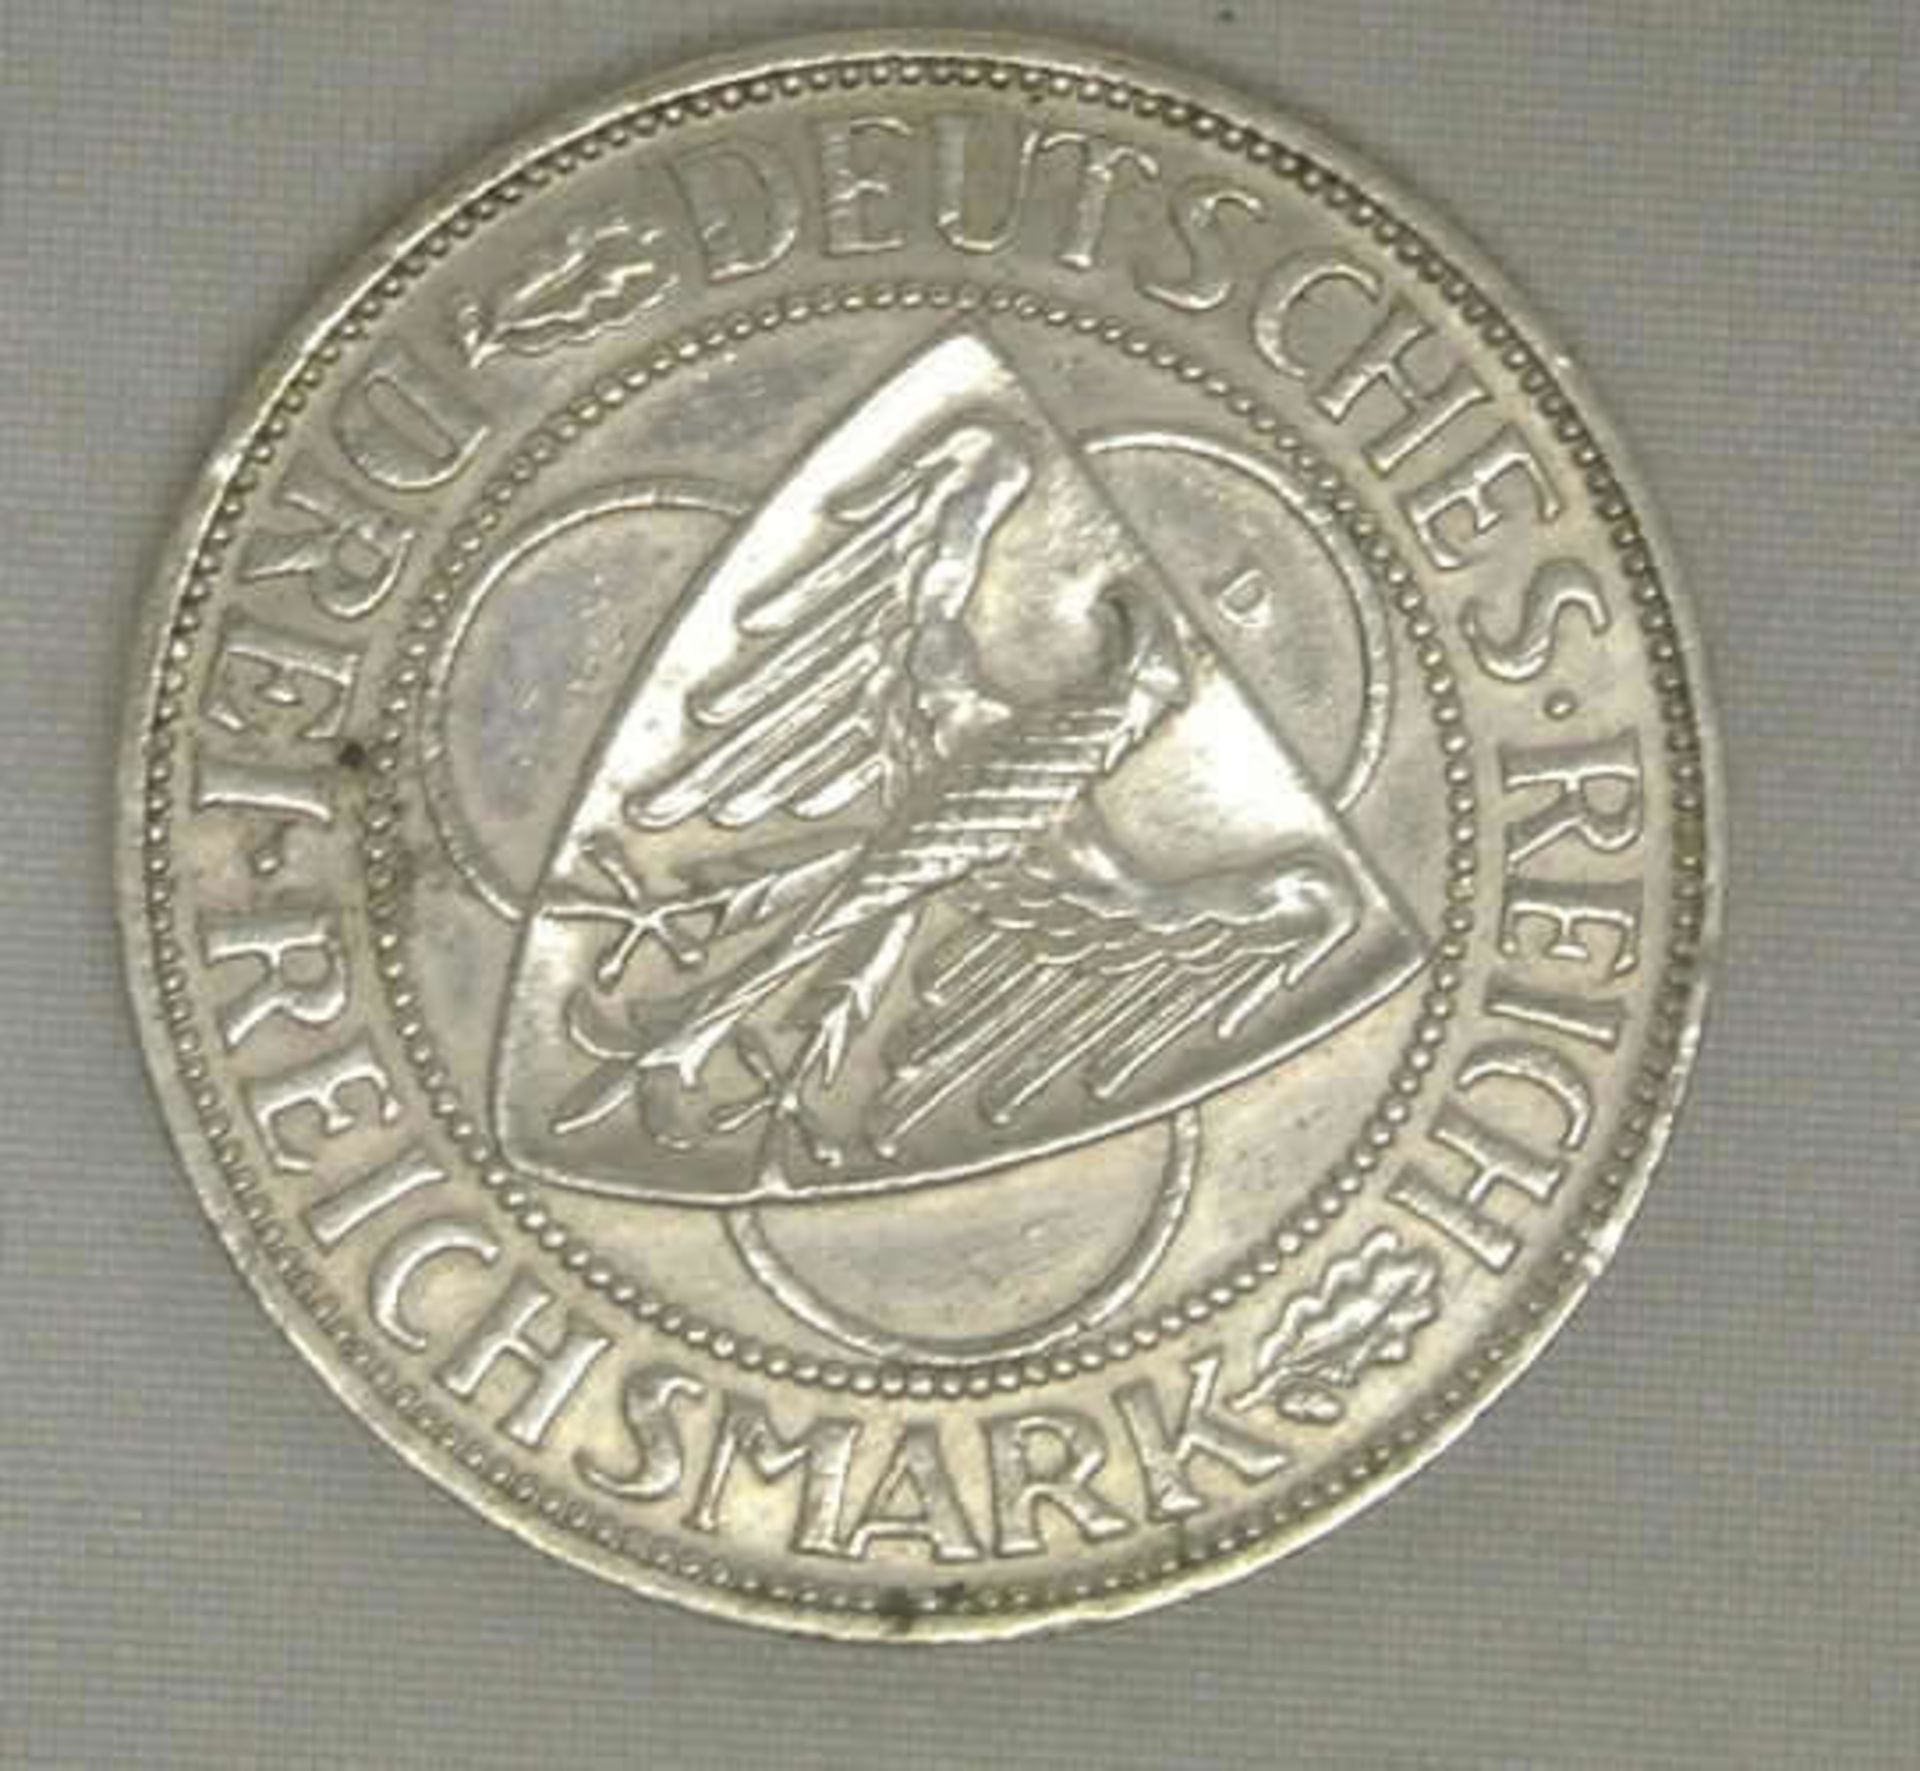 Weimarer Republik, 3 Mark, 1930 D, Silbermünze, "Rheinlandräumung", Jäger Nr. 345. Erhaltung: sehr - Bild 2 aus 2